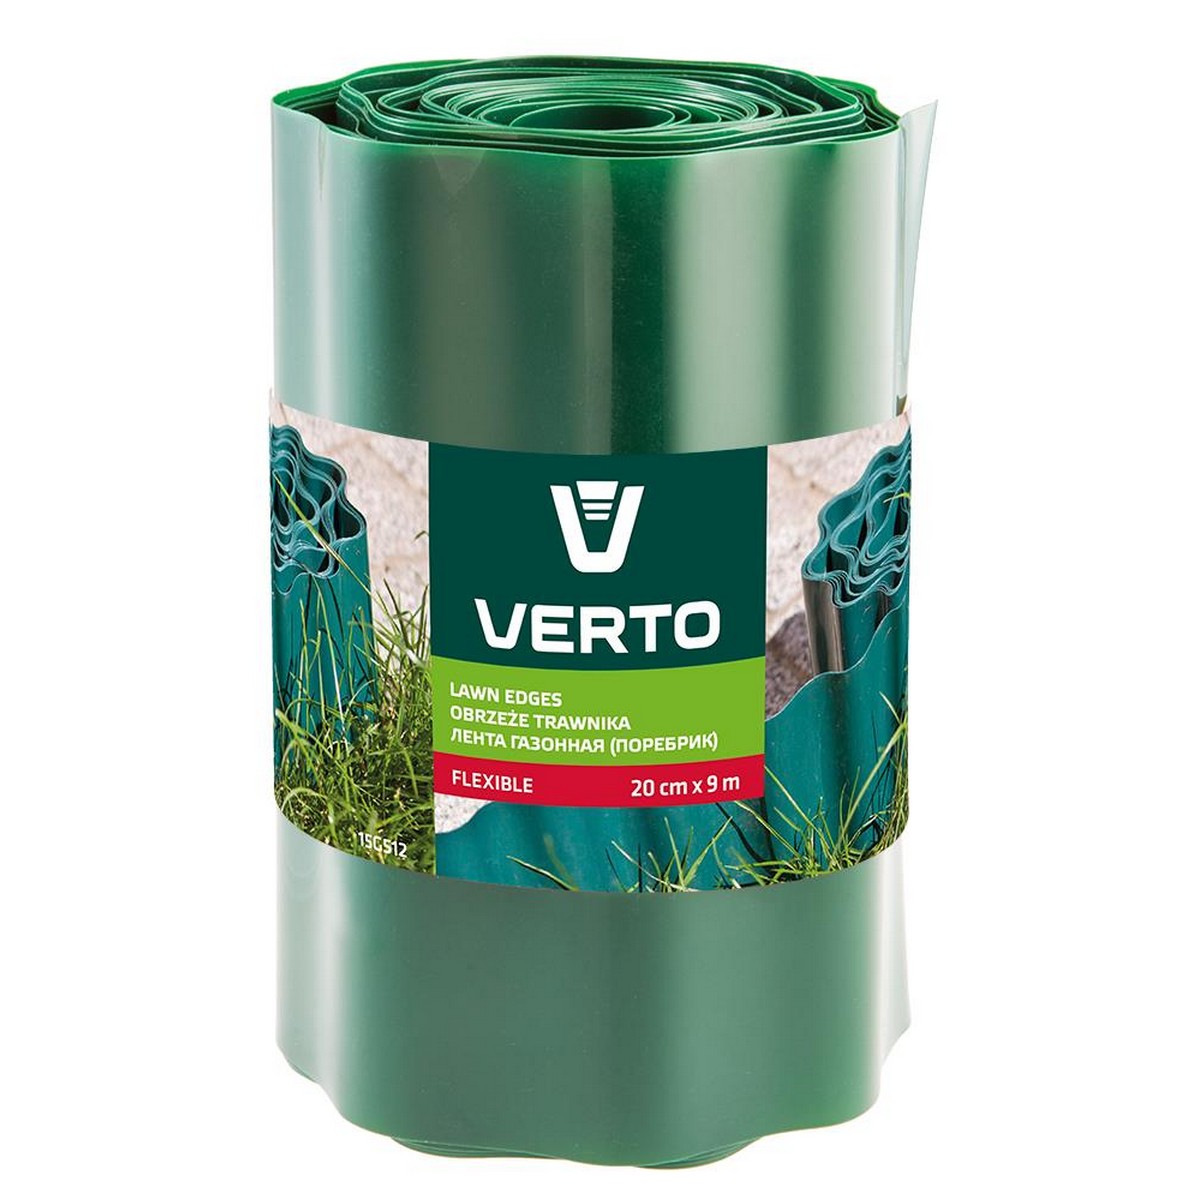 Купить лента газонная Verto 15G512 в Луцке